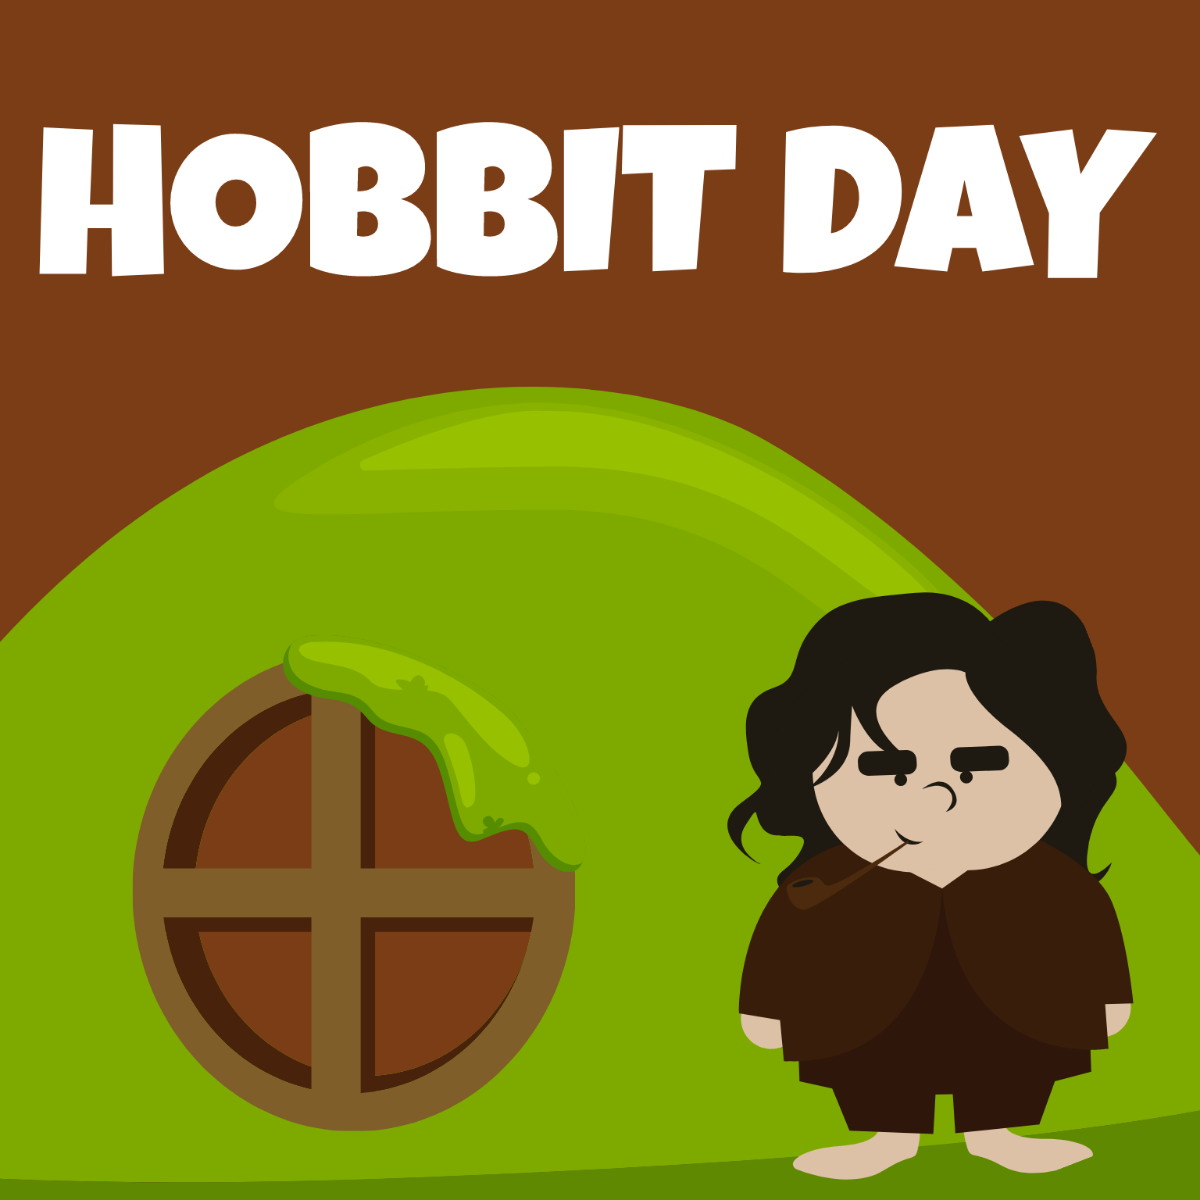 Hobbit Day Cartoon Vector